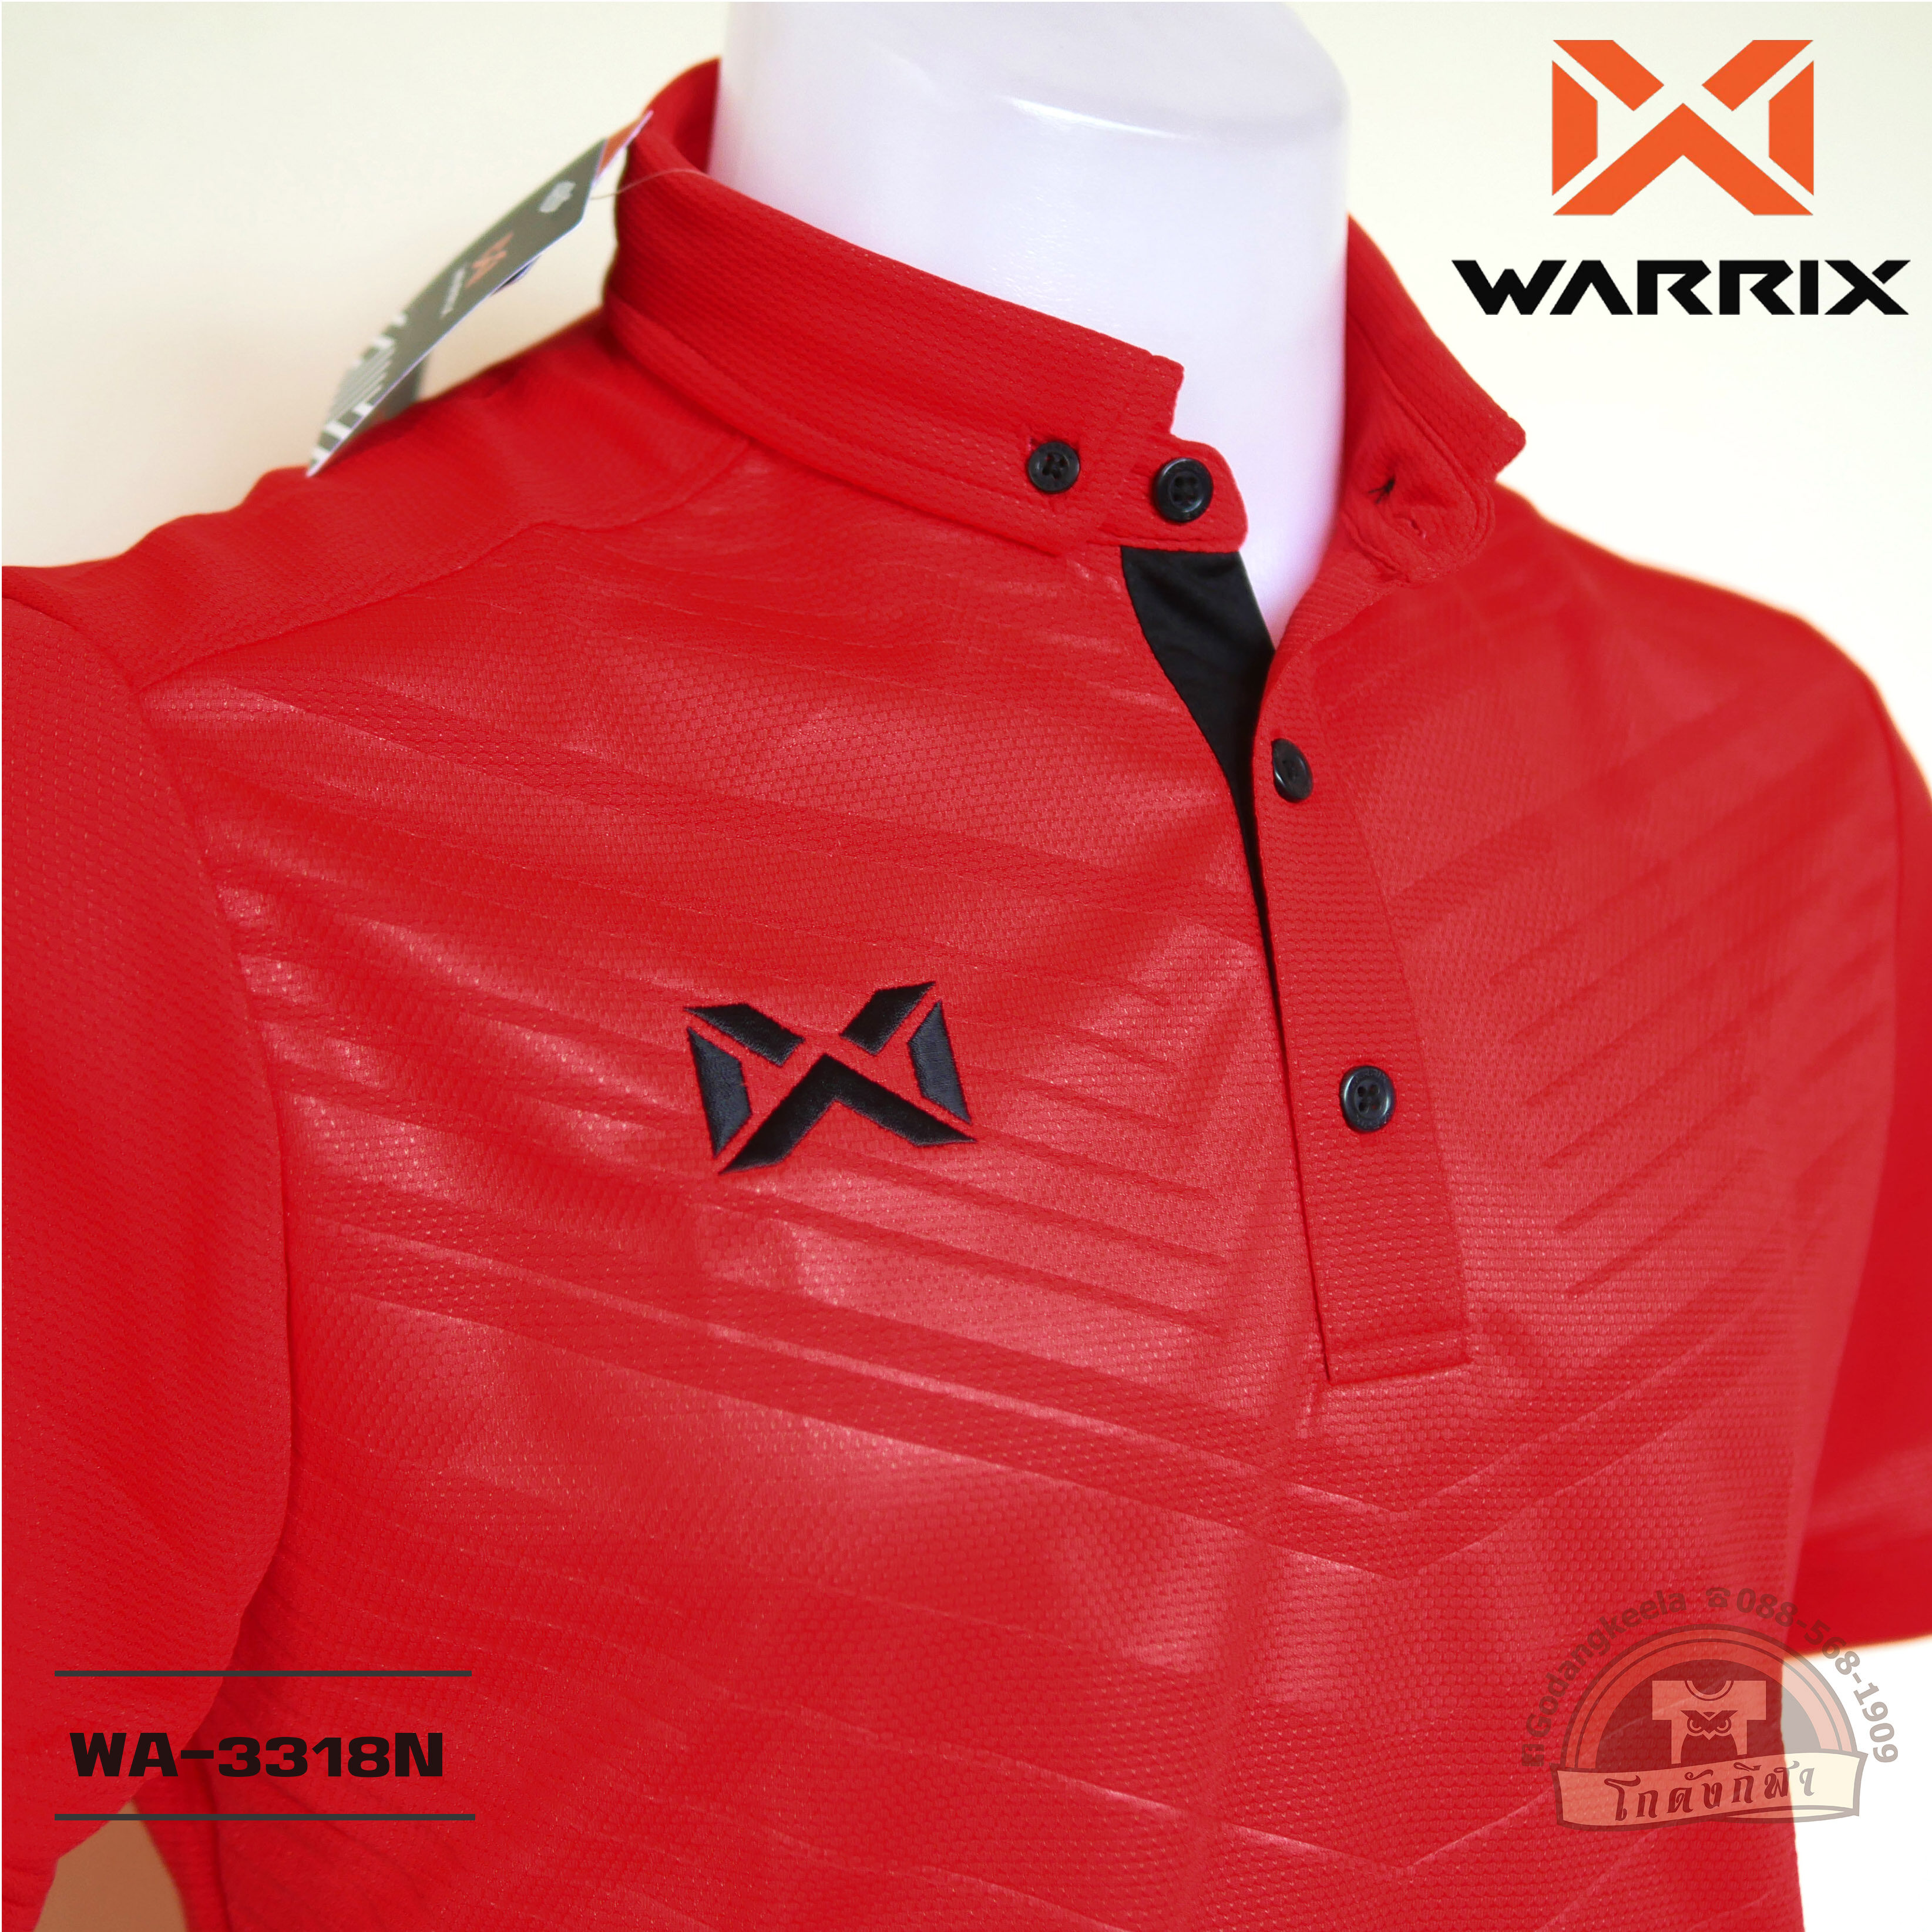 WARRIX เสื้อโปโล WA-3318N สีแดง (RA) วาริกซ์ วอริกซ์ ของแท้ 100%